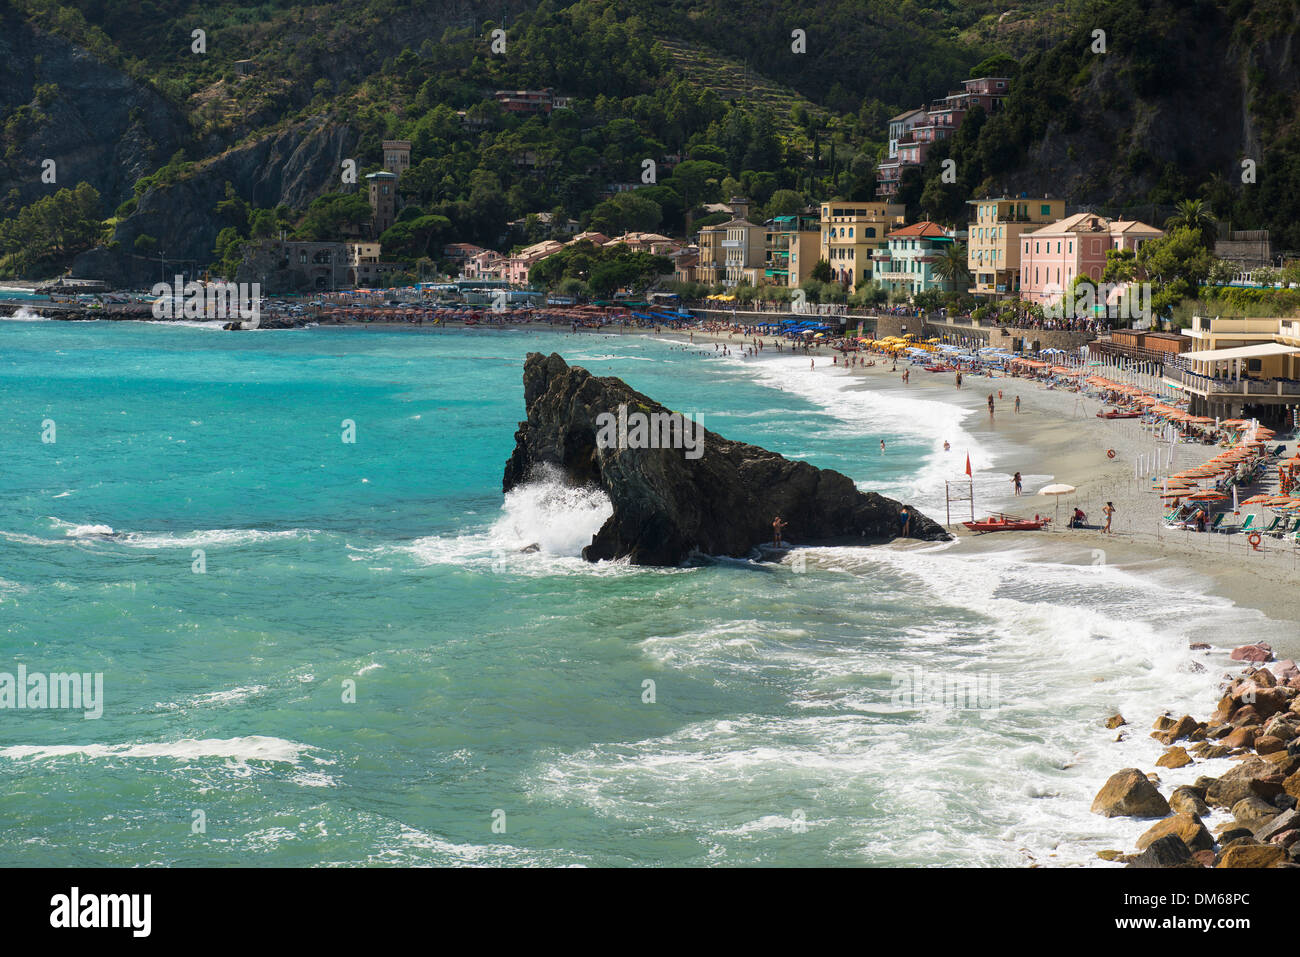 Beach, Monterosso al Mare, Cinque Terre, La Spezia Province, Liguria, Italy Stock Photo